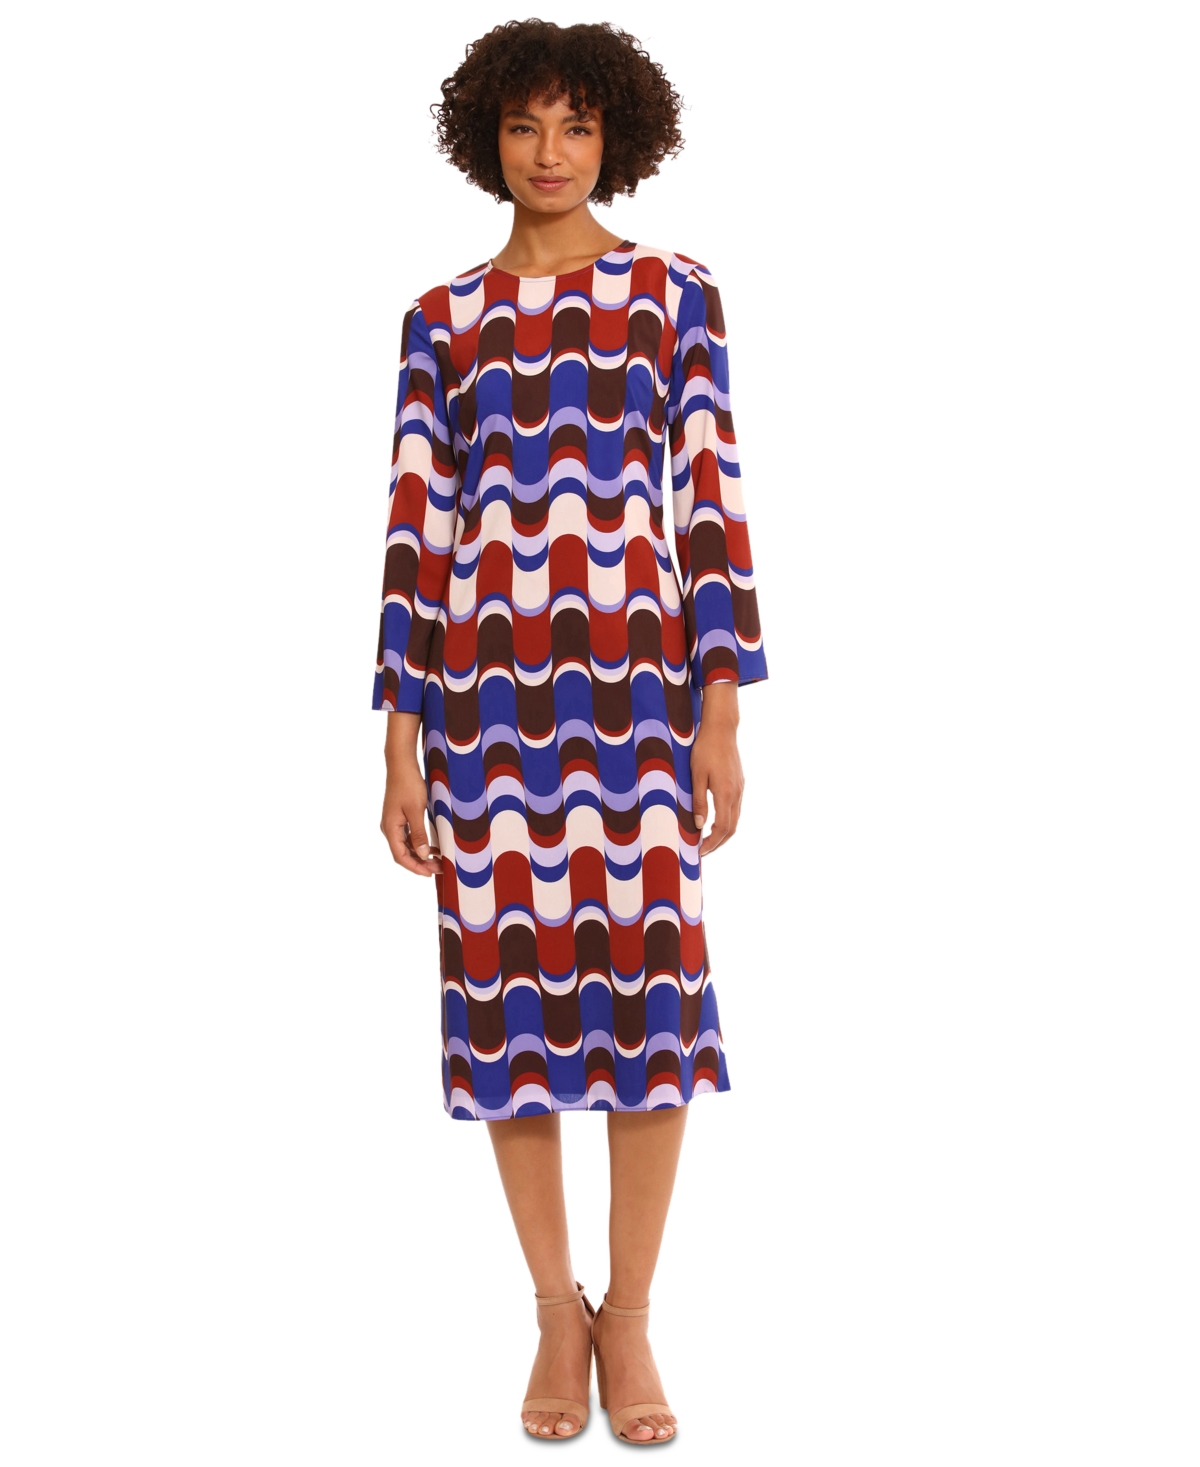 Women's Printed Long-Sleeve Midi Dress - Beige/brown